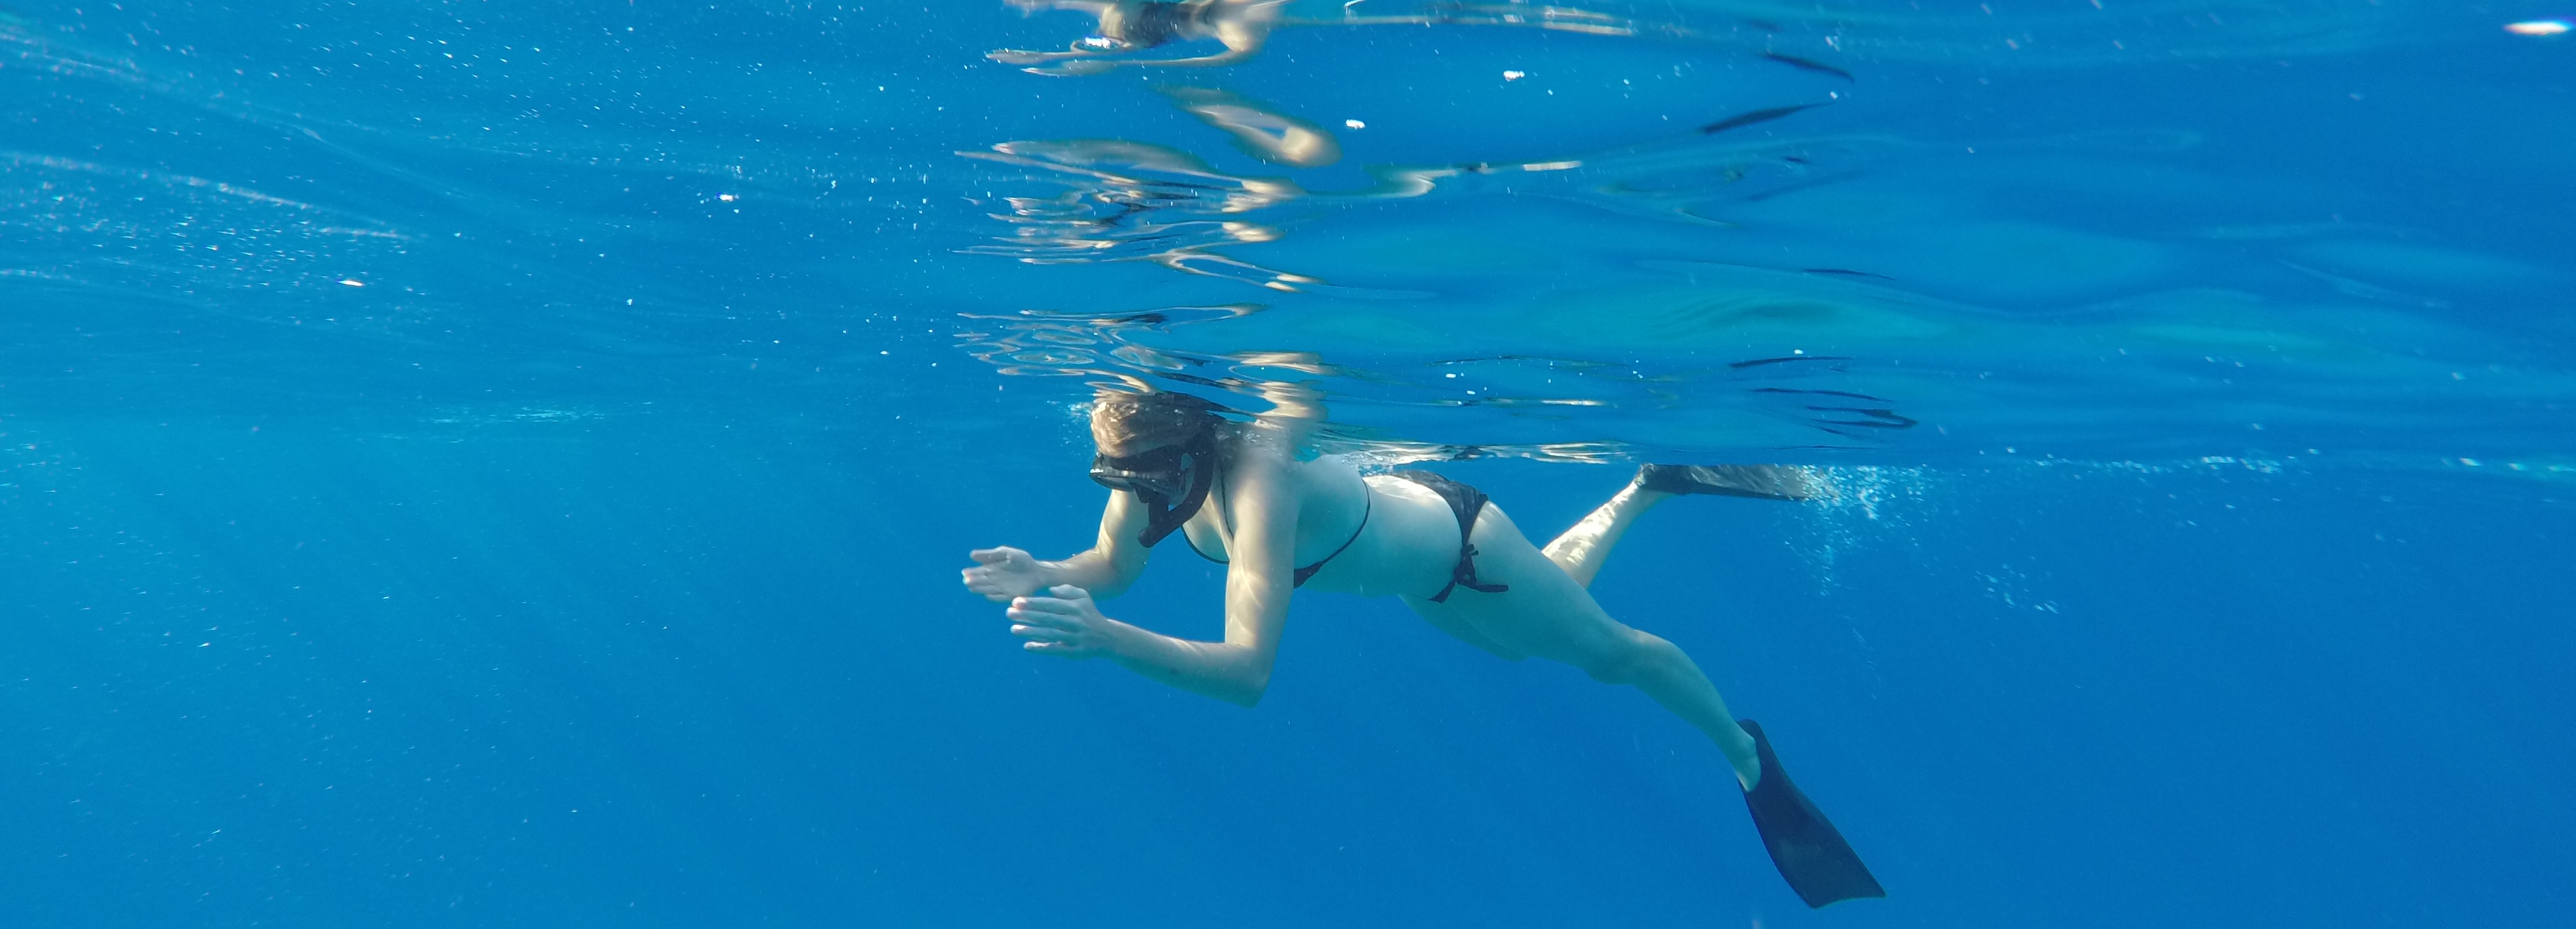 Justine Schluntz about me banner snorkeling